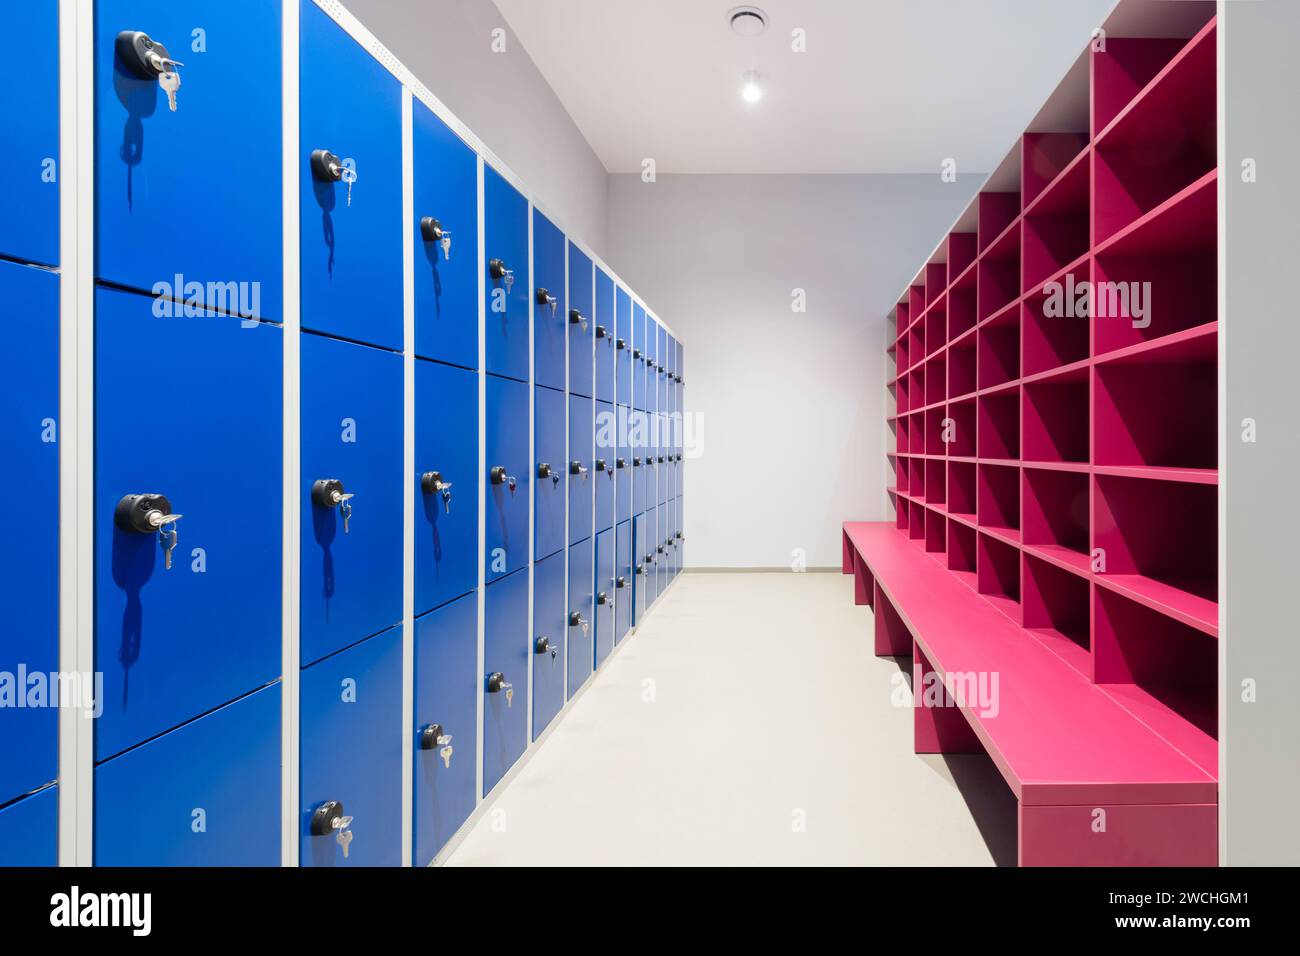 Eine Reihe blauer Schließfächer an einer Wand mit Schlüssel und rosa Schrank mit leeren Regalen und Bank Stockfoto